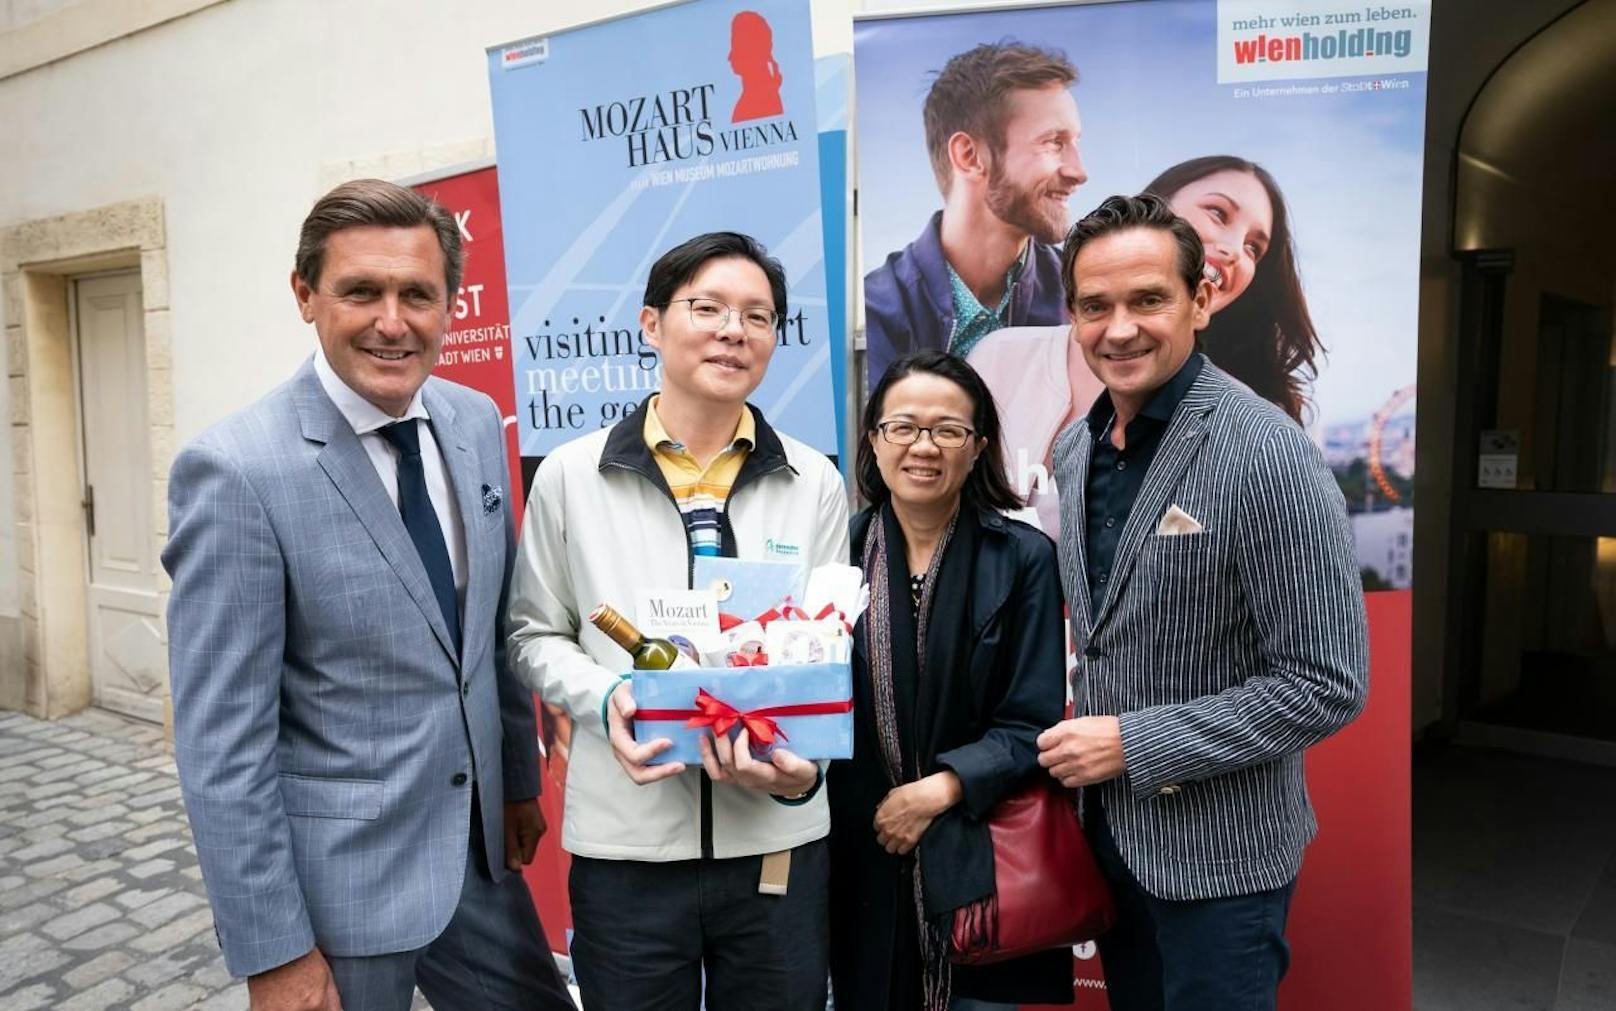 Das Ehepaar Li Li Teo und Gatte Chun Yew Wong aus Singapur sind der zweimillionste Gast im Mozarthaus Vienna, Wirtschaftsstadtrat Peter Hanke (li.) und Wien Holding-Chef Kurt Gollowitzer (re.) gratulierten herzlich.